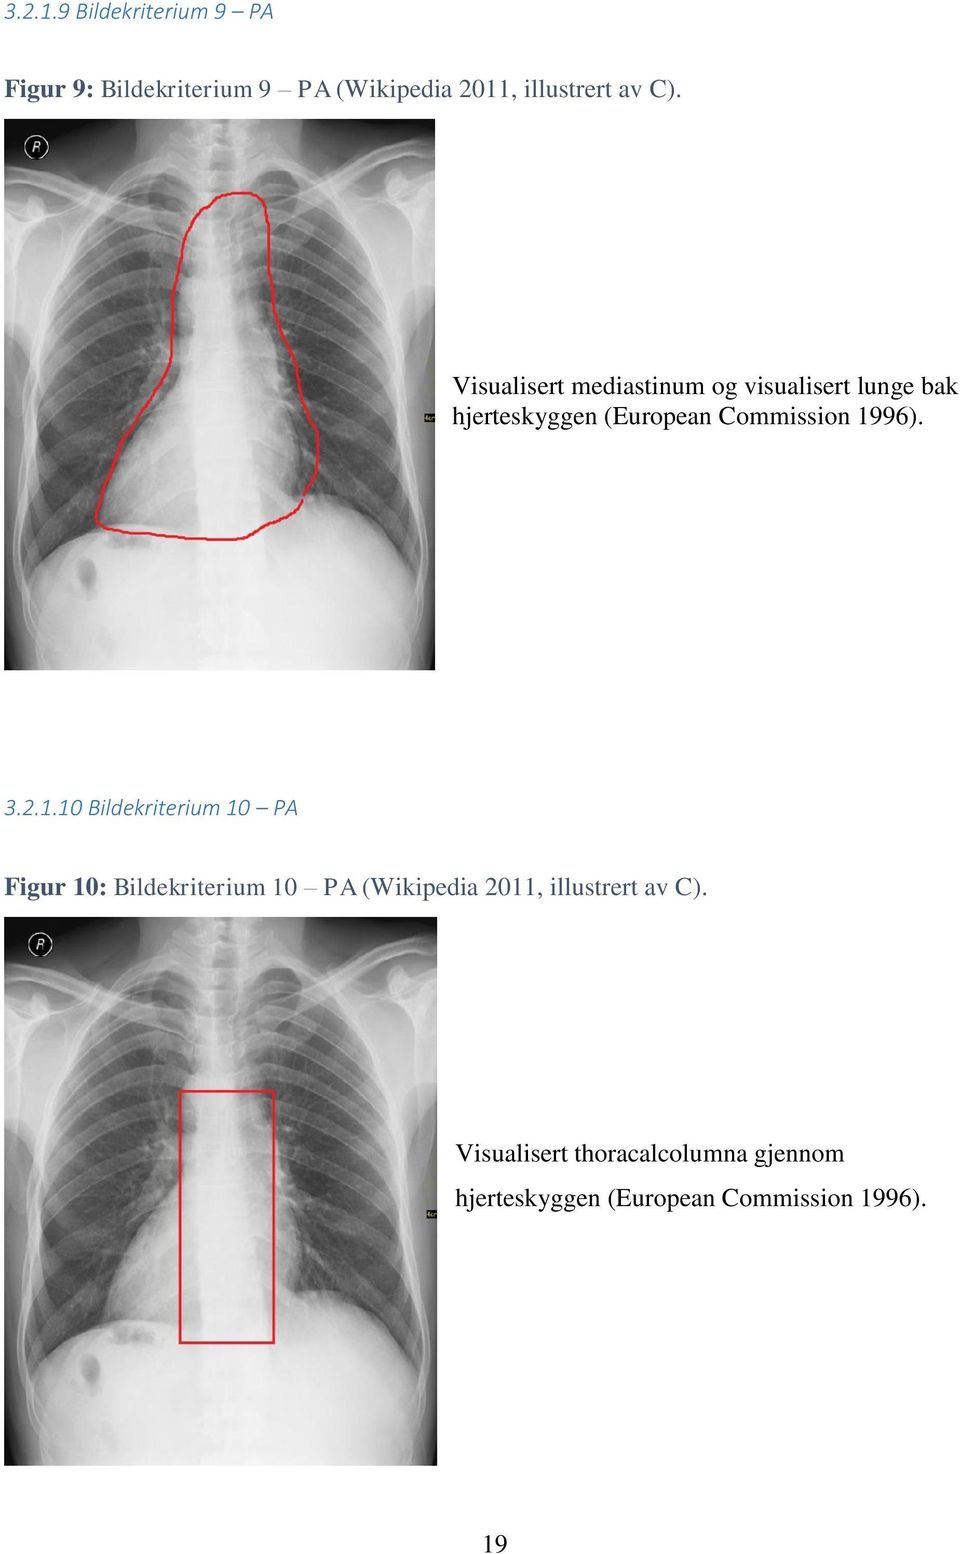 Visualisert mediastinum og visualisert lunge bak hjerteskyggen (European Commission 1996).